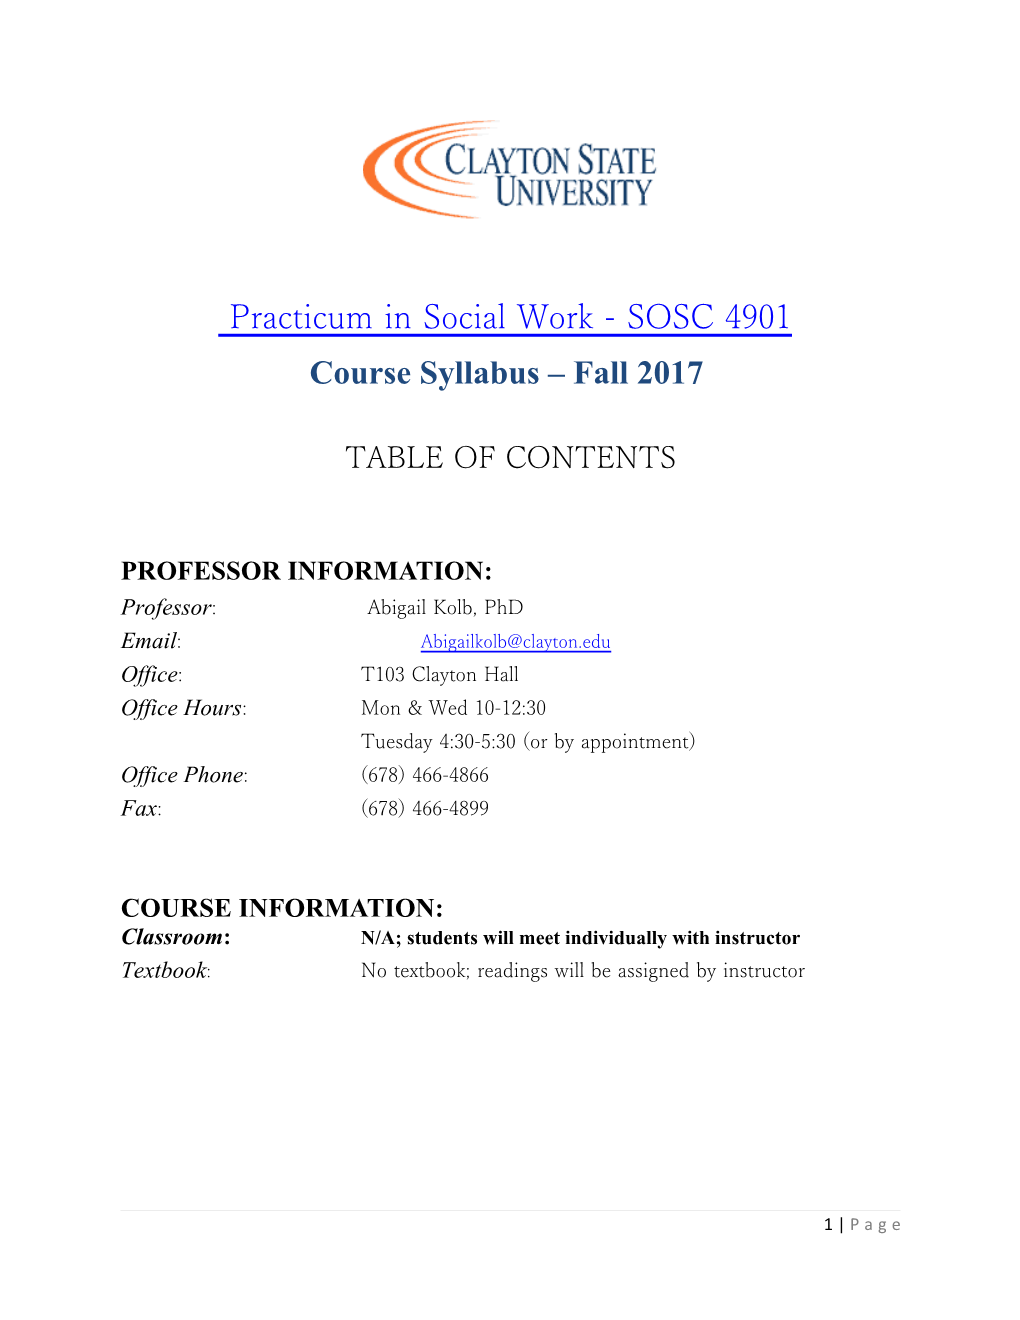 Course Syllabus Fall 2017